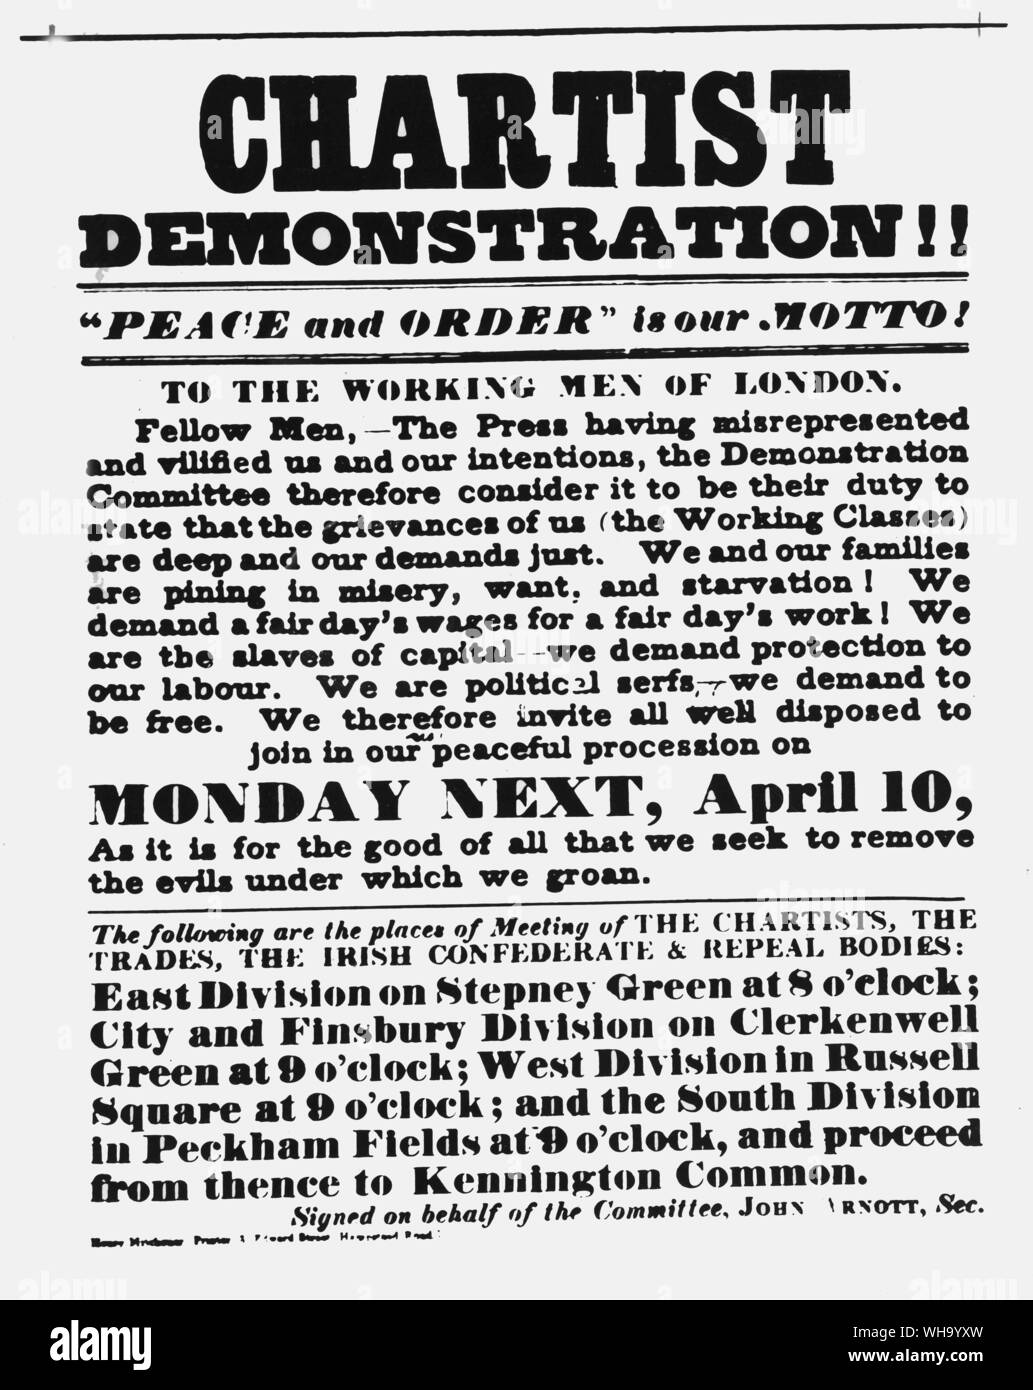 Cartel de chartist demostración, 1848. Foto de stock